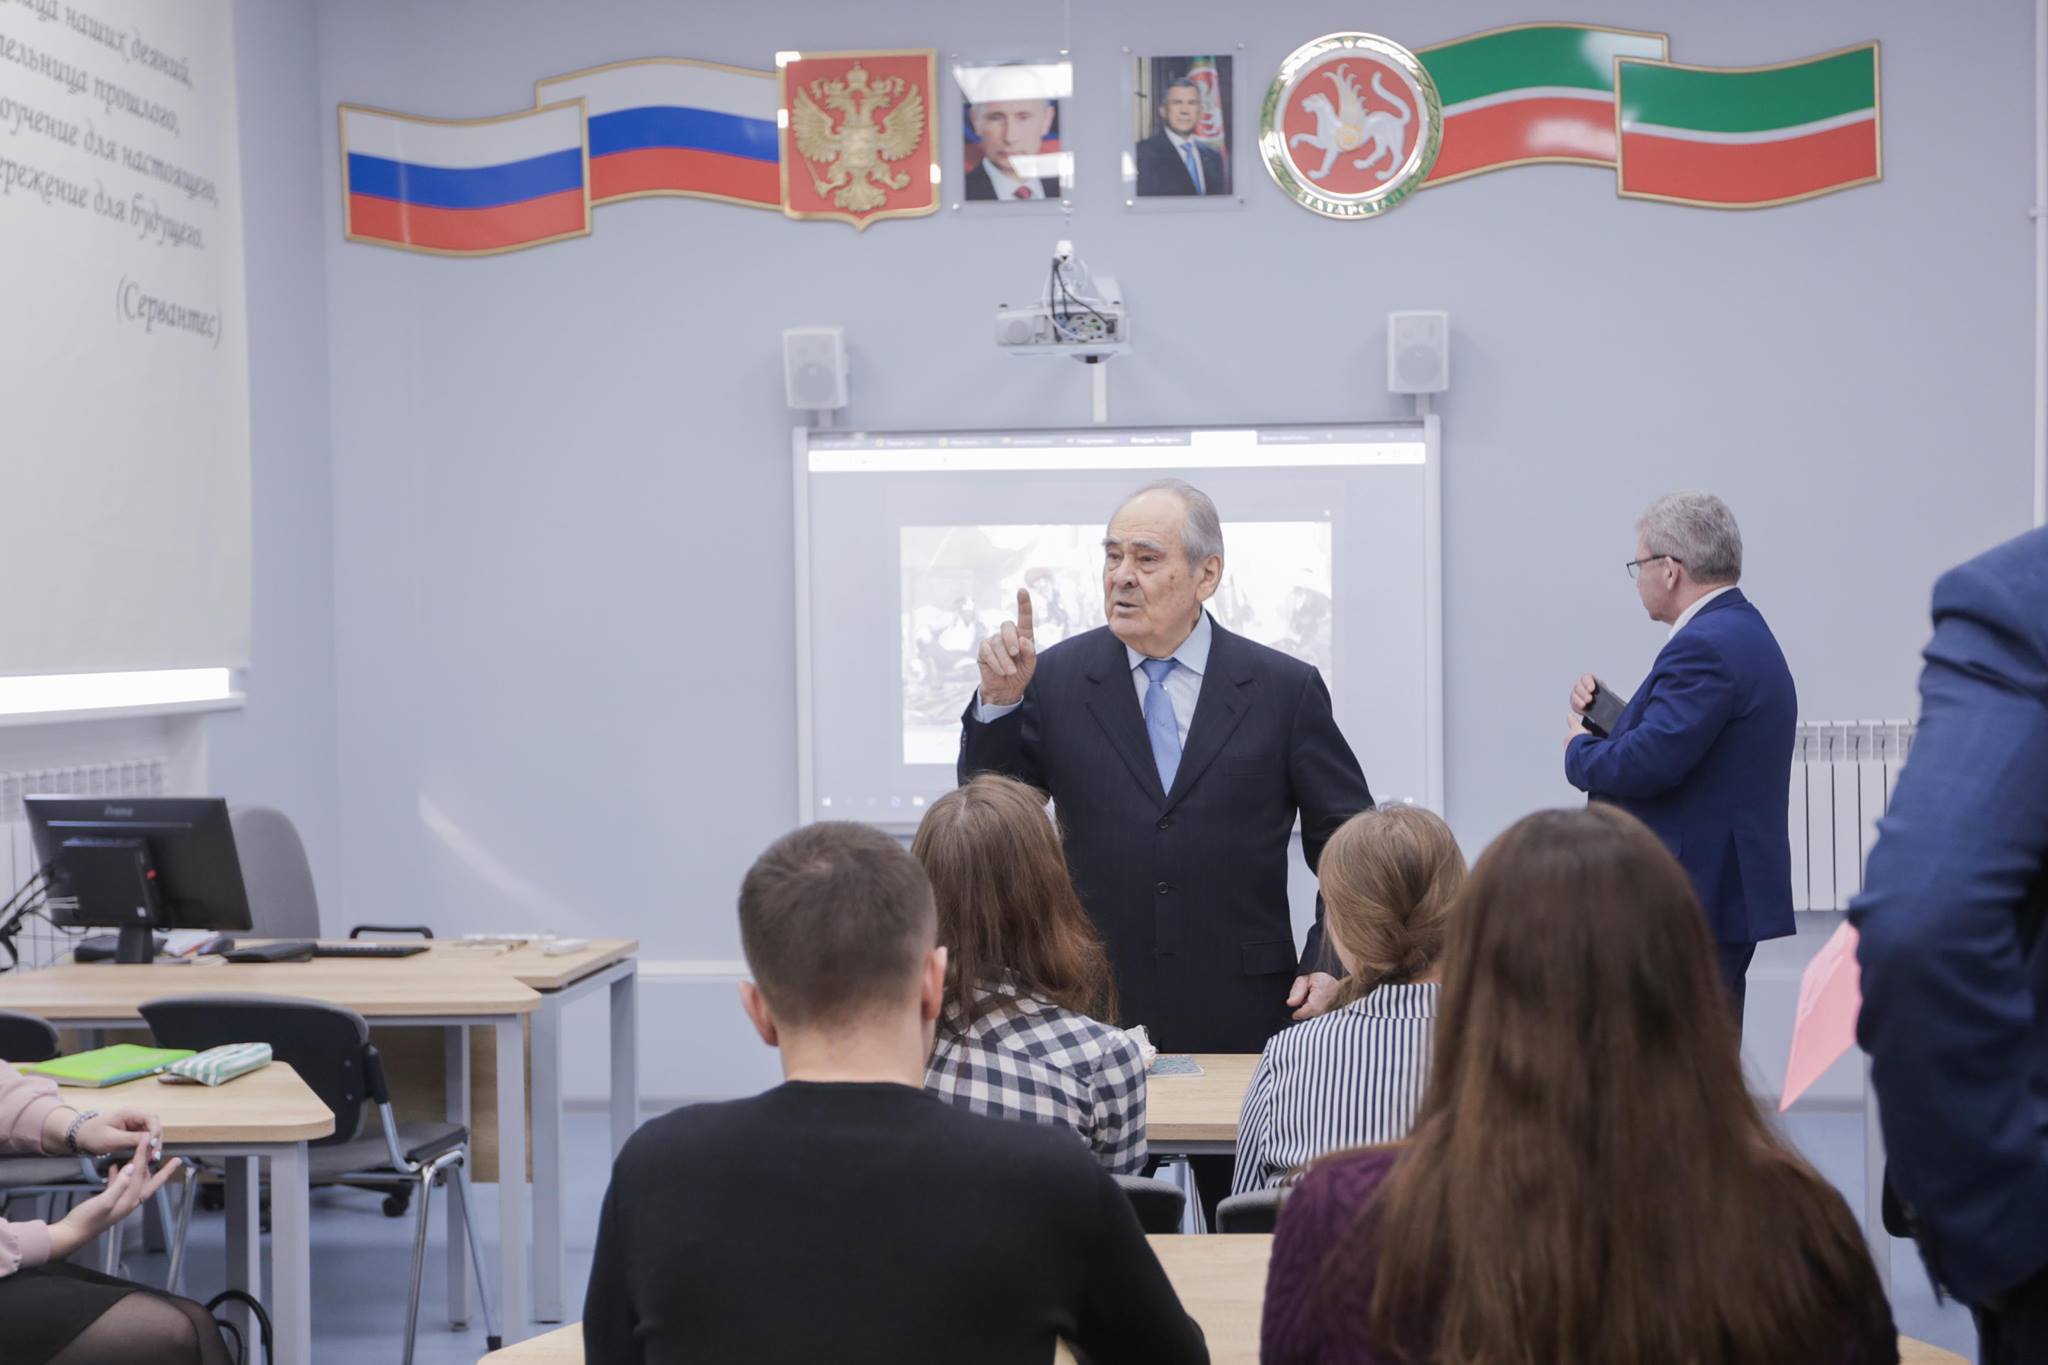 Мінтімєр Шаймієв про перевірки татарської мови в школах: “Прокурори ходили по Конституції”